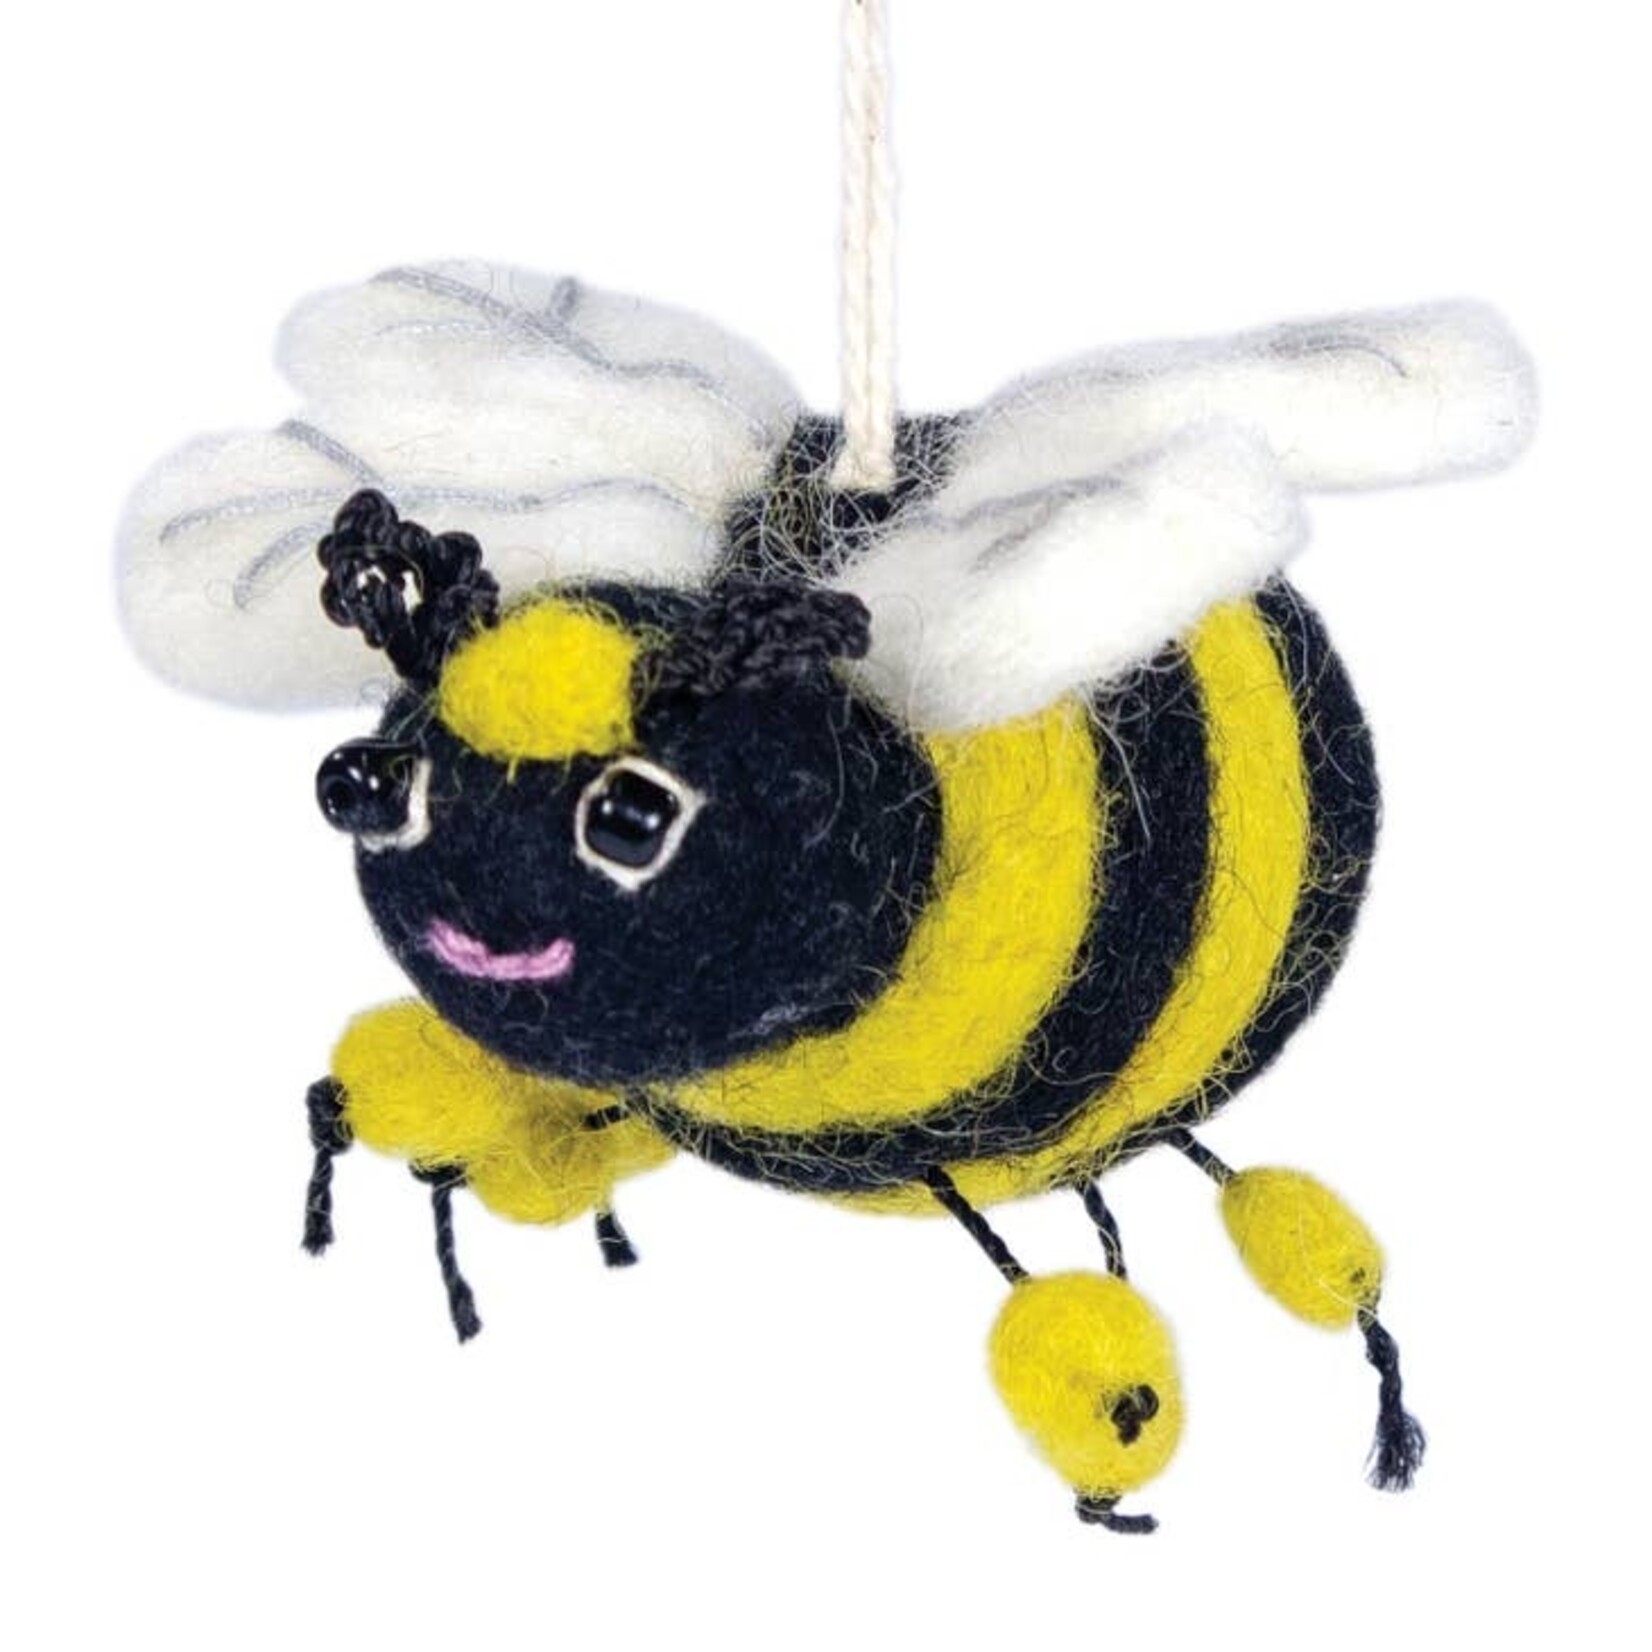 DZI dZi Handmade Honeybee Ornament